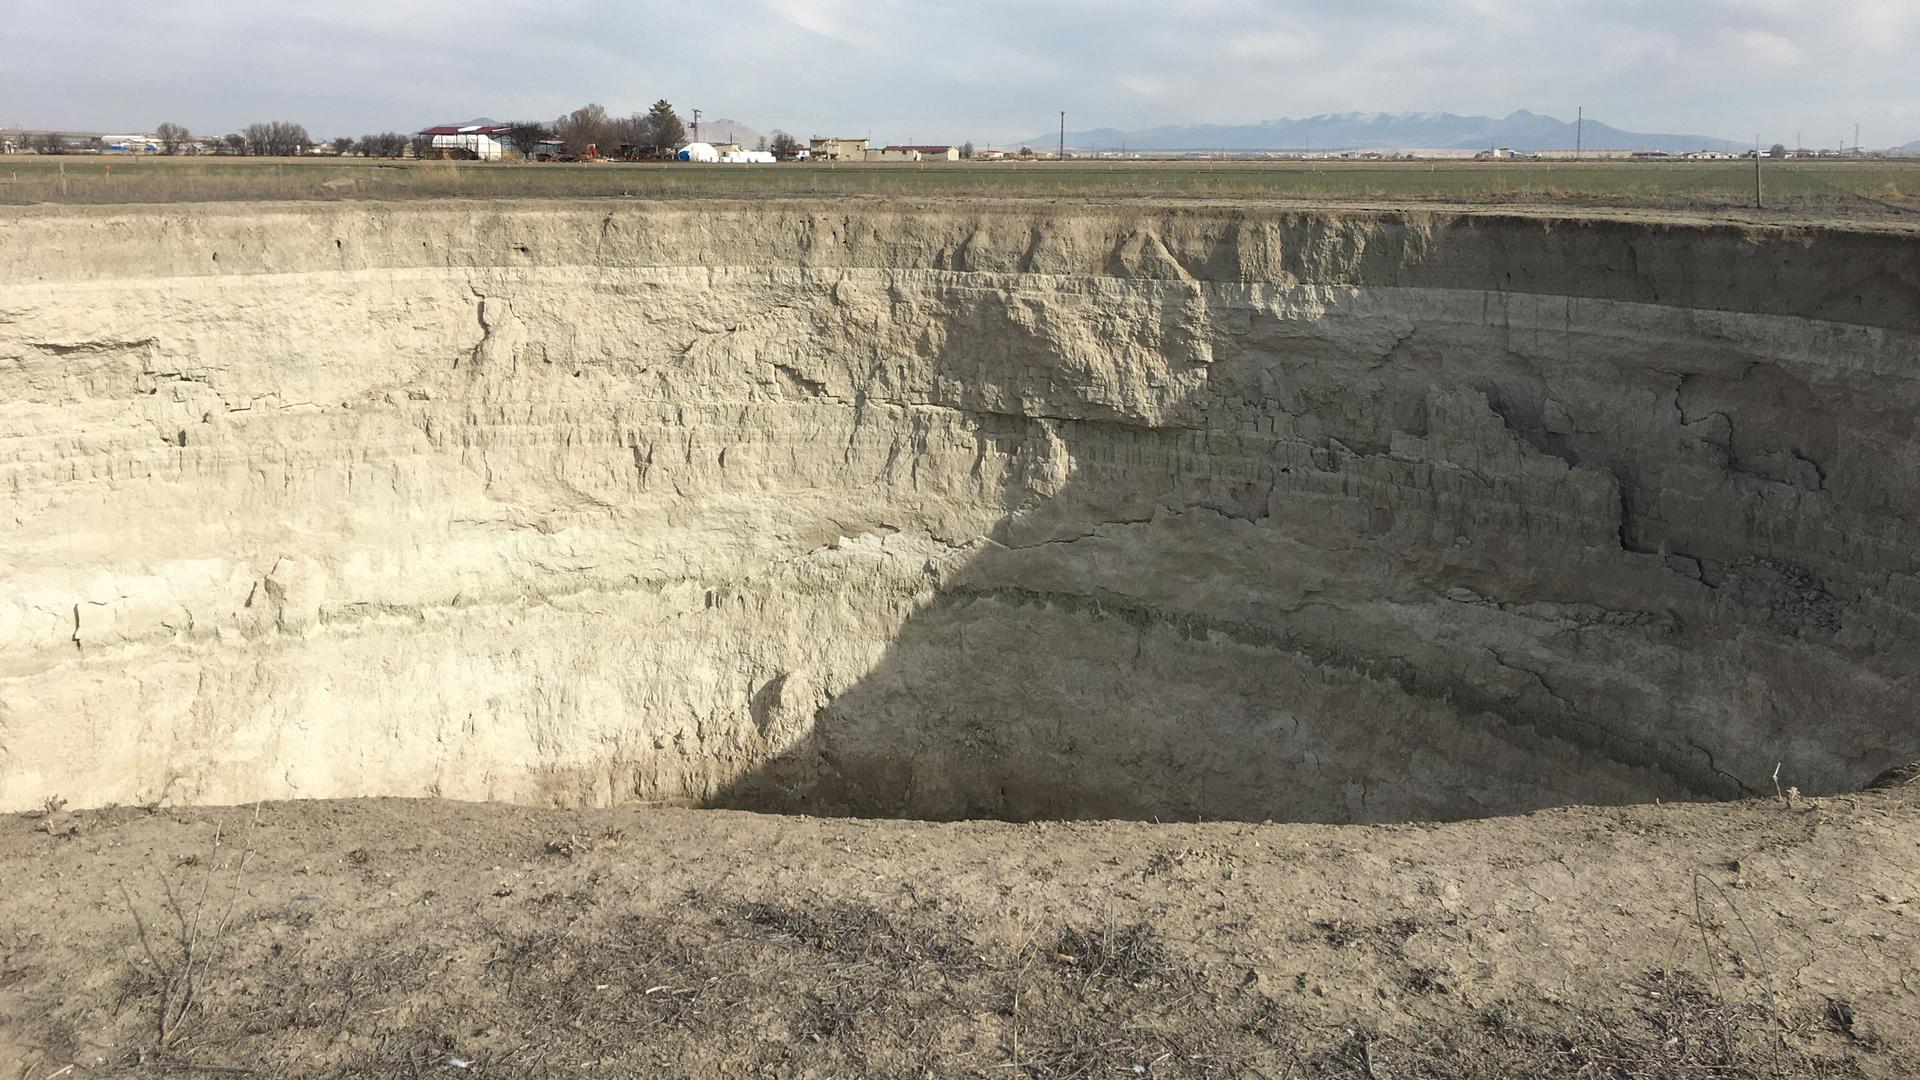 Massive sinkholes appear in farmers’ fields in central Turkey due to